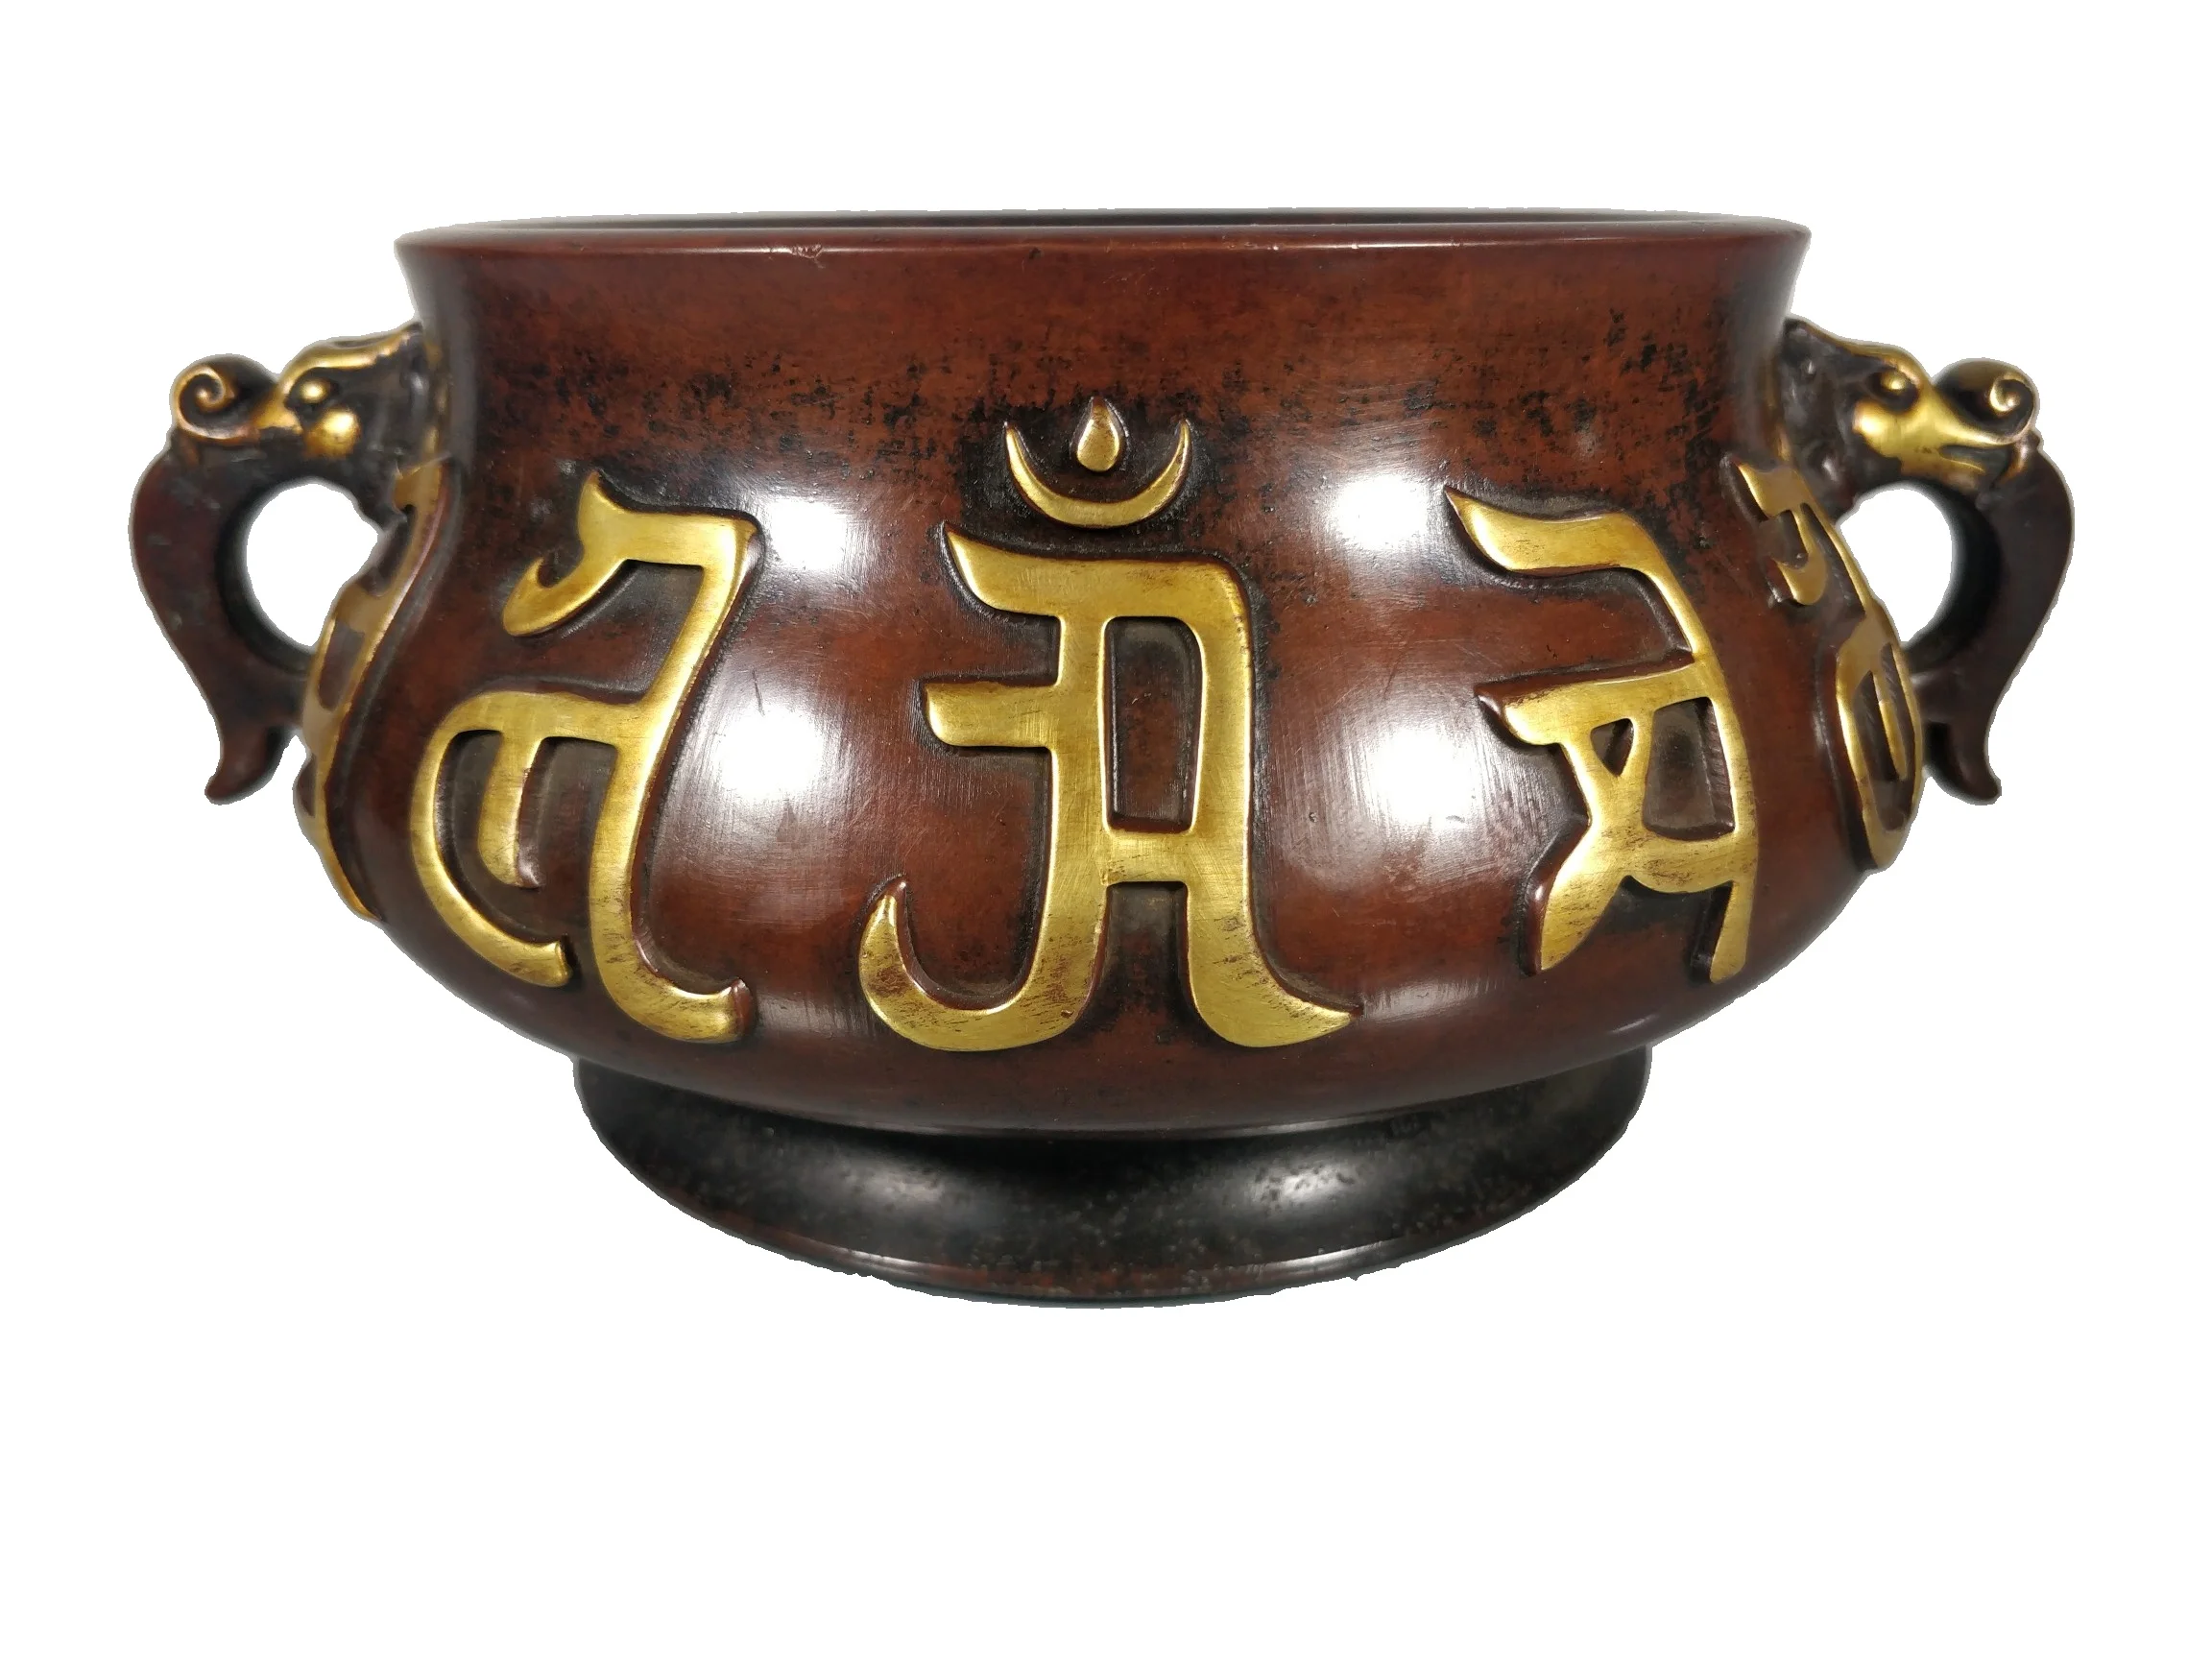 

Laojunlu камея из фиолетовой бронзы, позолоченная печь с шестью символами, Античная бронзовая коллекция шедевров, сопутствующая Китайская трад...